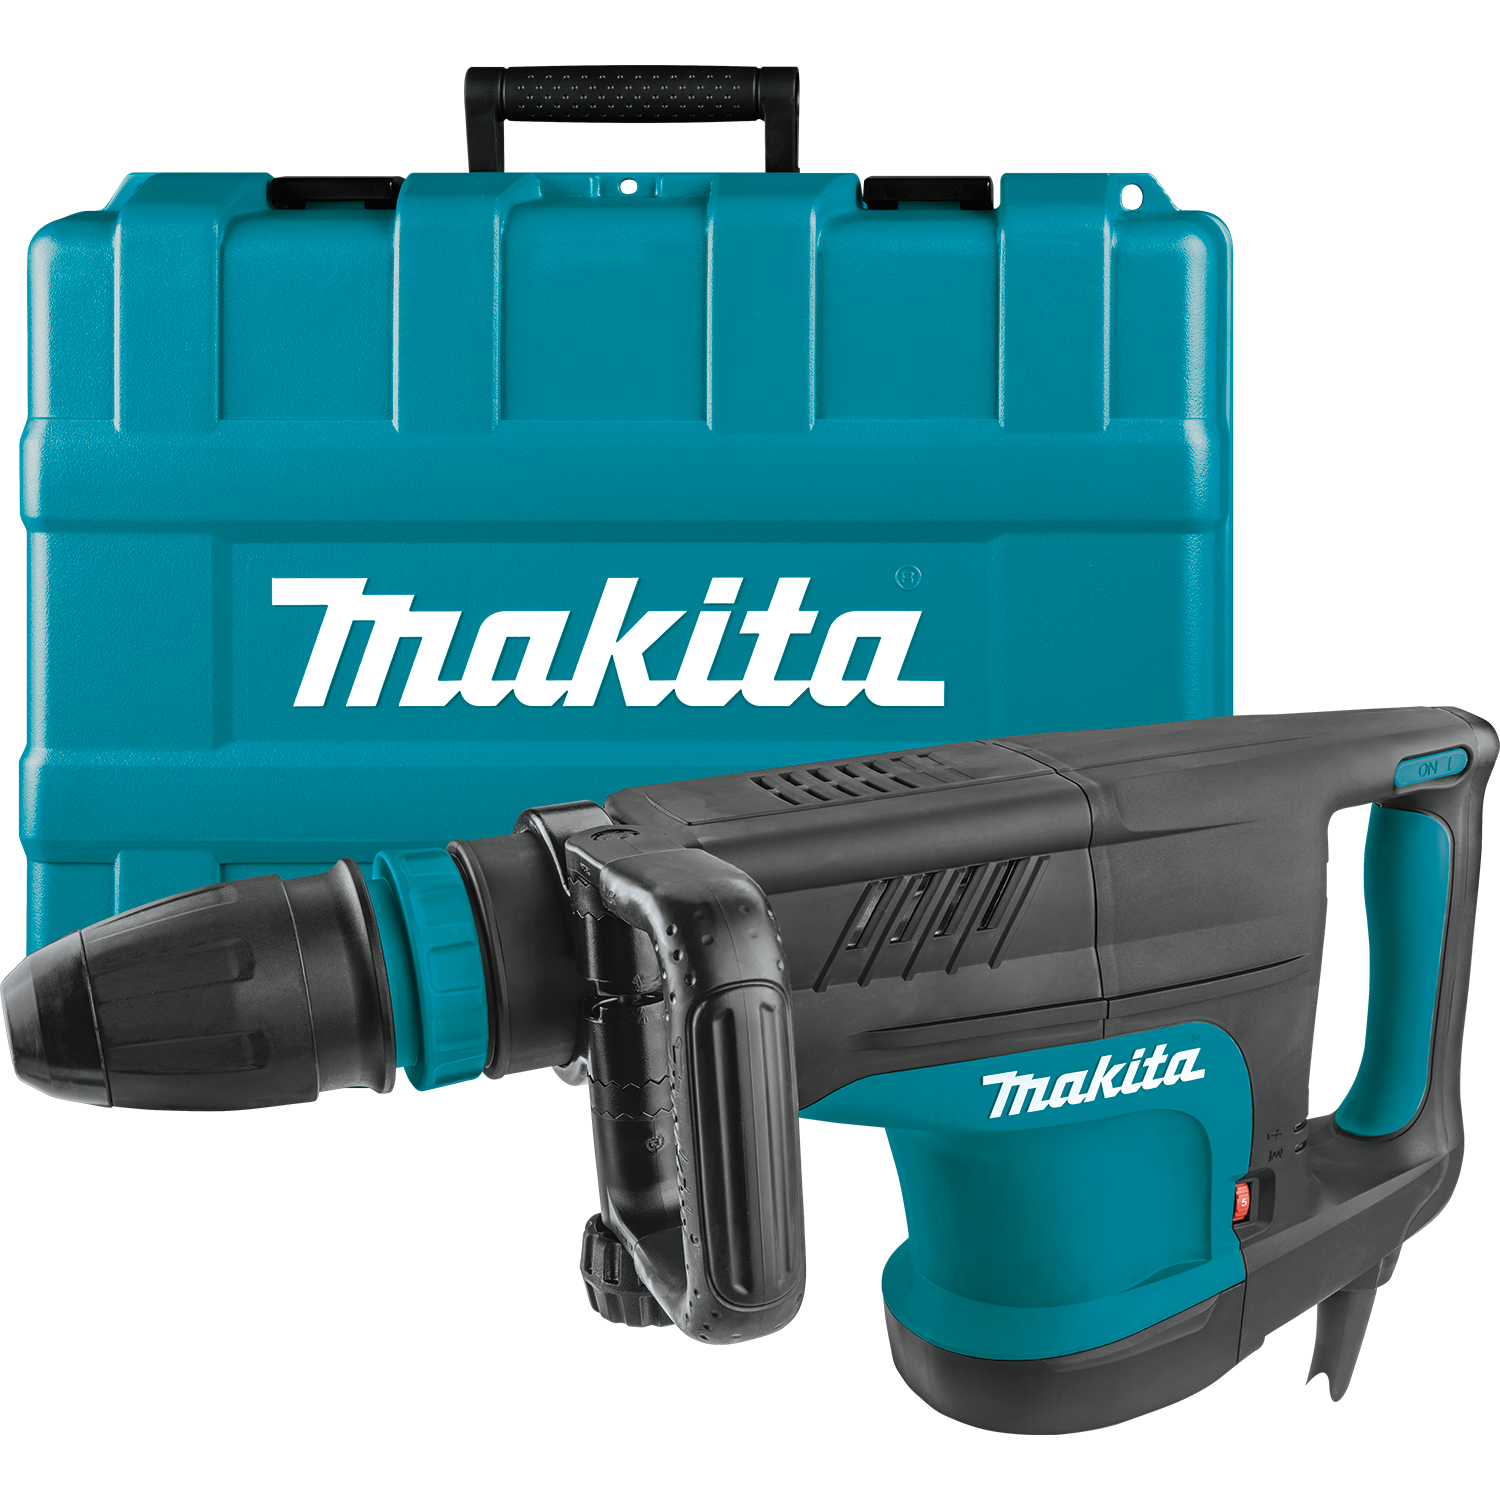 Makita Model #: HM1203C 20 lb. Demolition Hammer, accepts SDS‑MAX bits